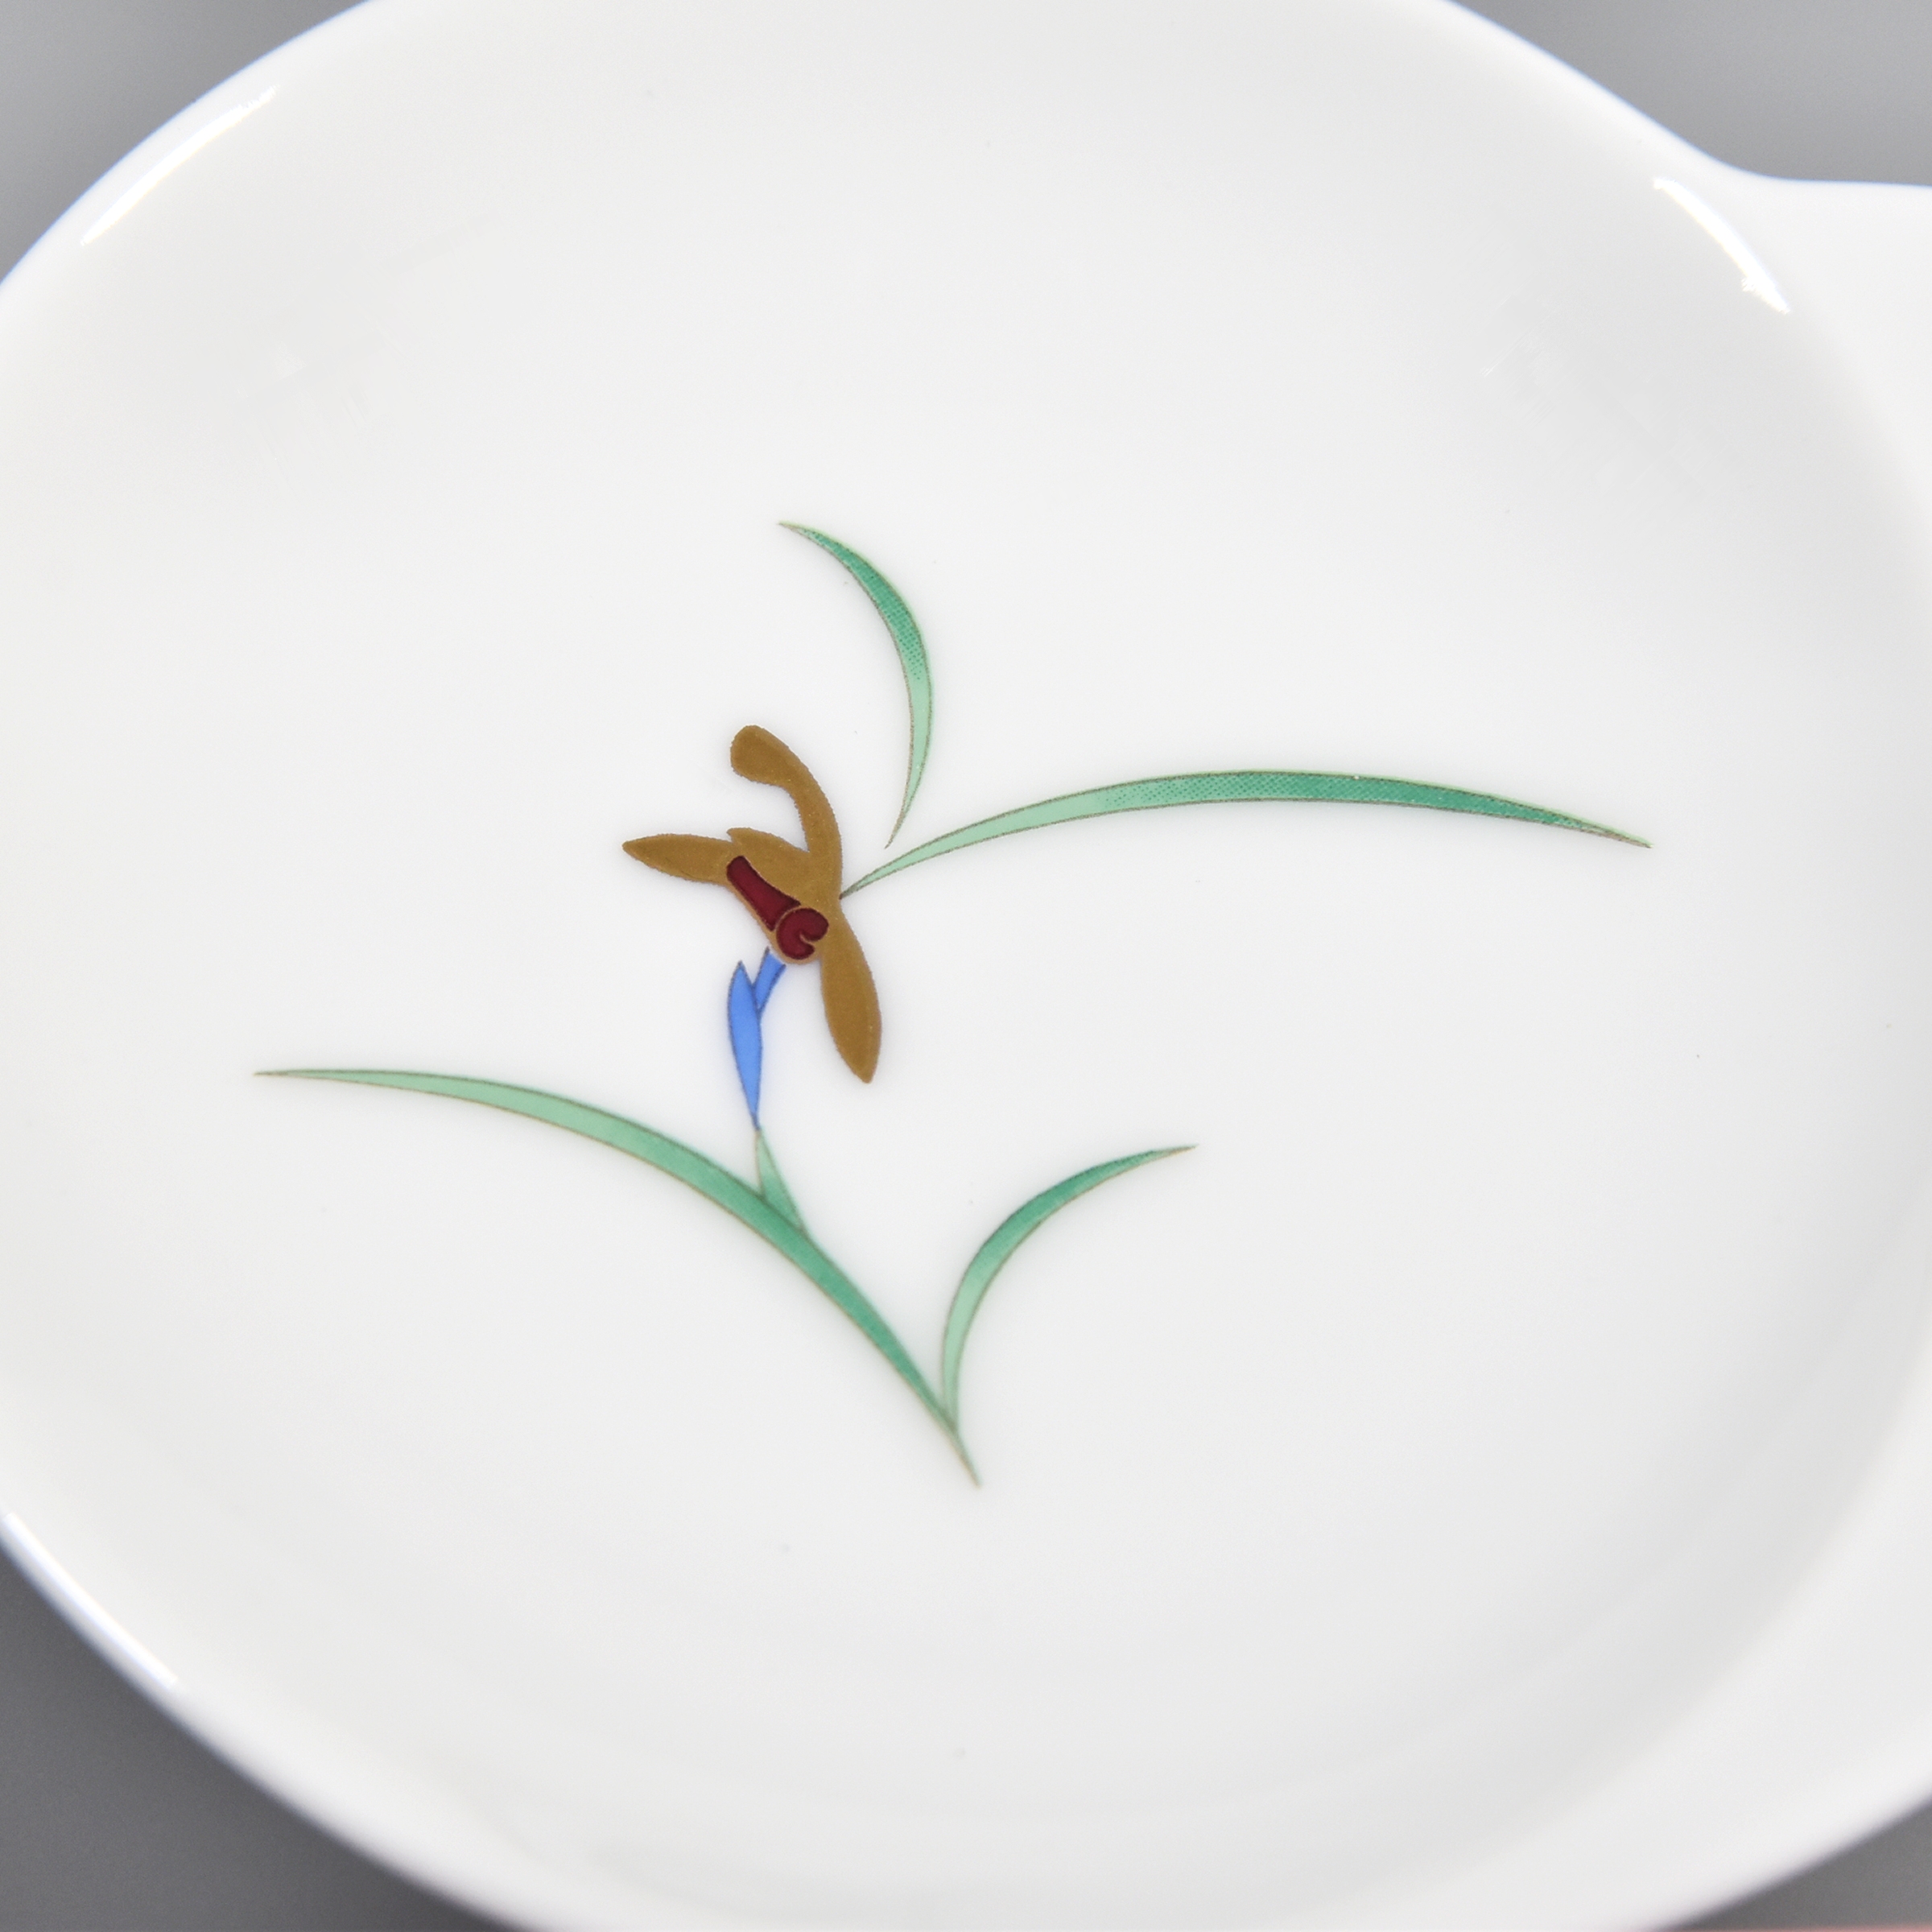 お皿の中央には小菊のデザインです。和の雰囲気が素敵ですね。